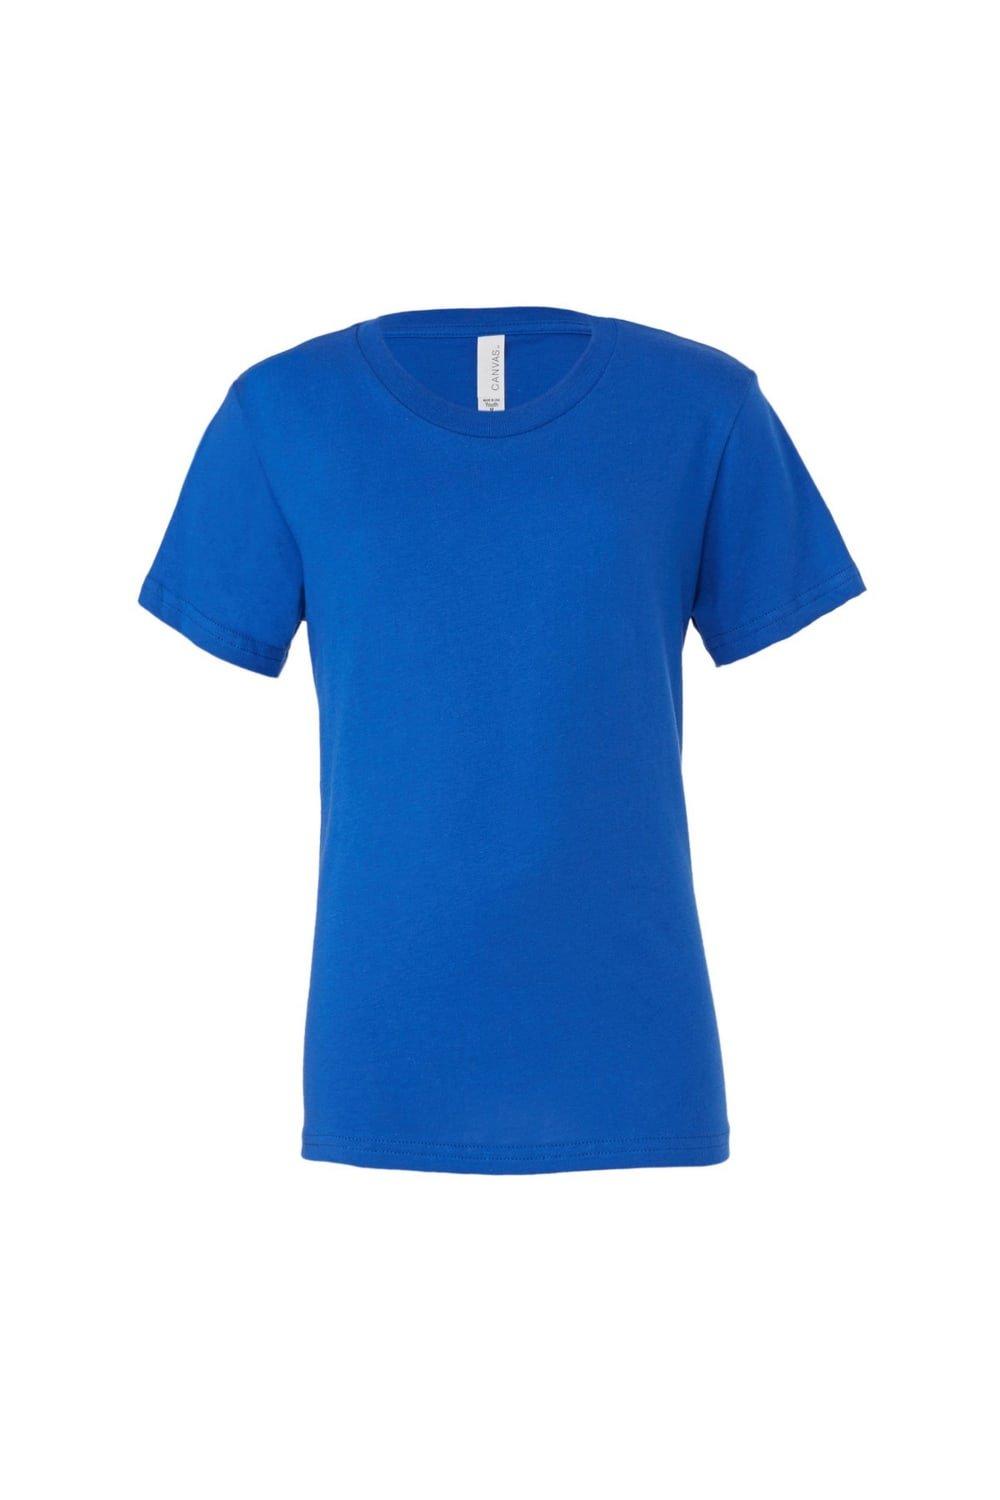 Молодежная футболка из джерси с короткими рукавами Bella + Canvas, синий запасная стеклянная трубка vaporlinda для vgod емкость для фокусов прозрачный стеклянный резервуар розничная торговля